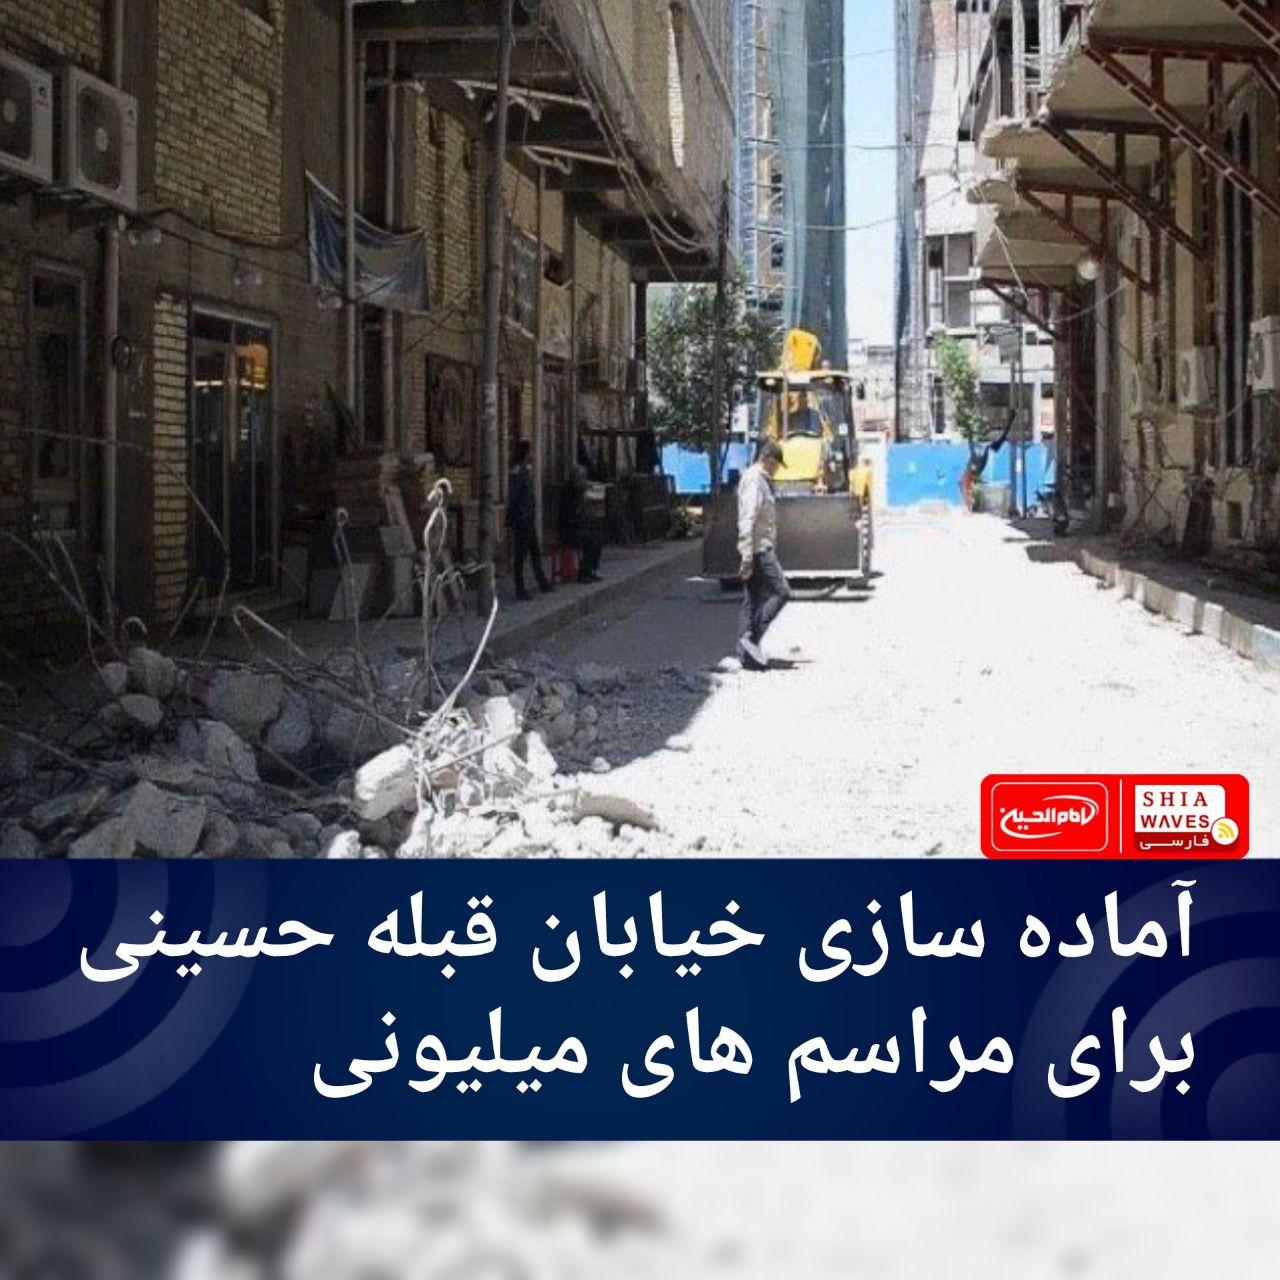 تصویر آماده سازی خیابان قبله حسینی برای مراسم های میلیونی